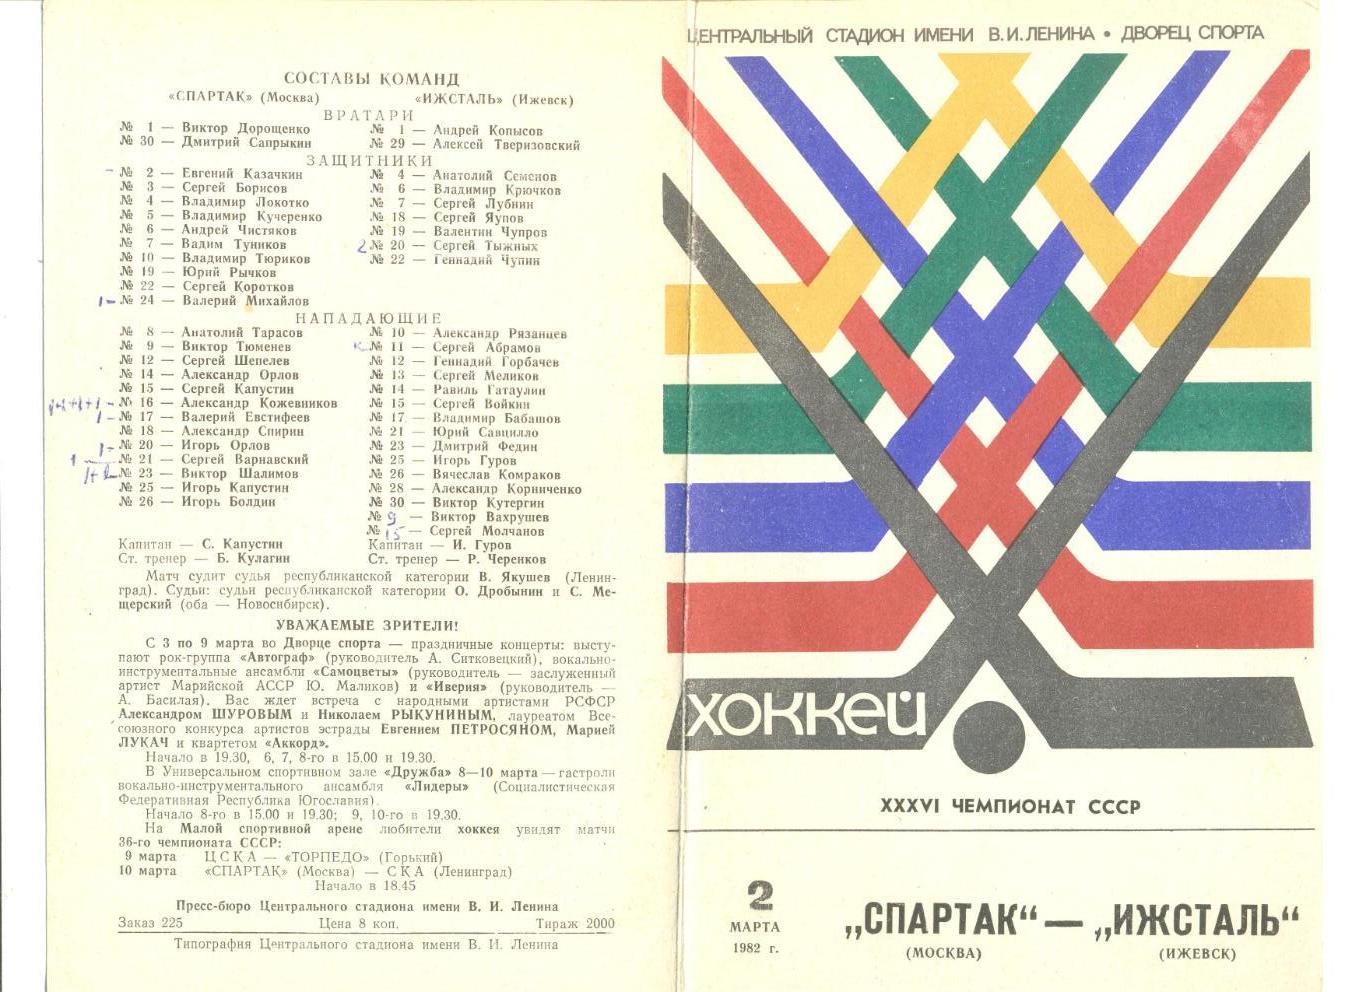 Спартак Москва - Ижсталь Ижевск 02.03.1982 г.